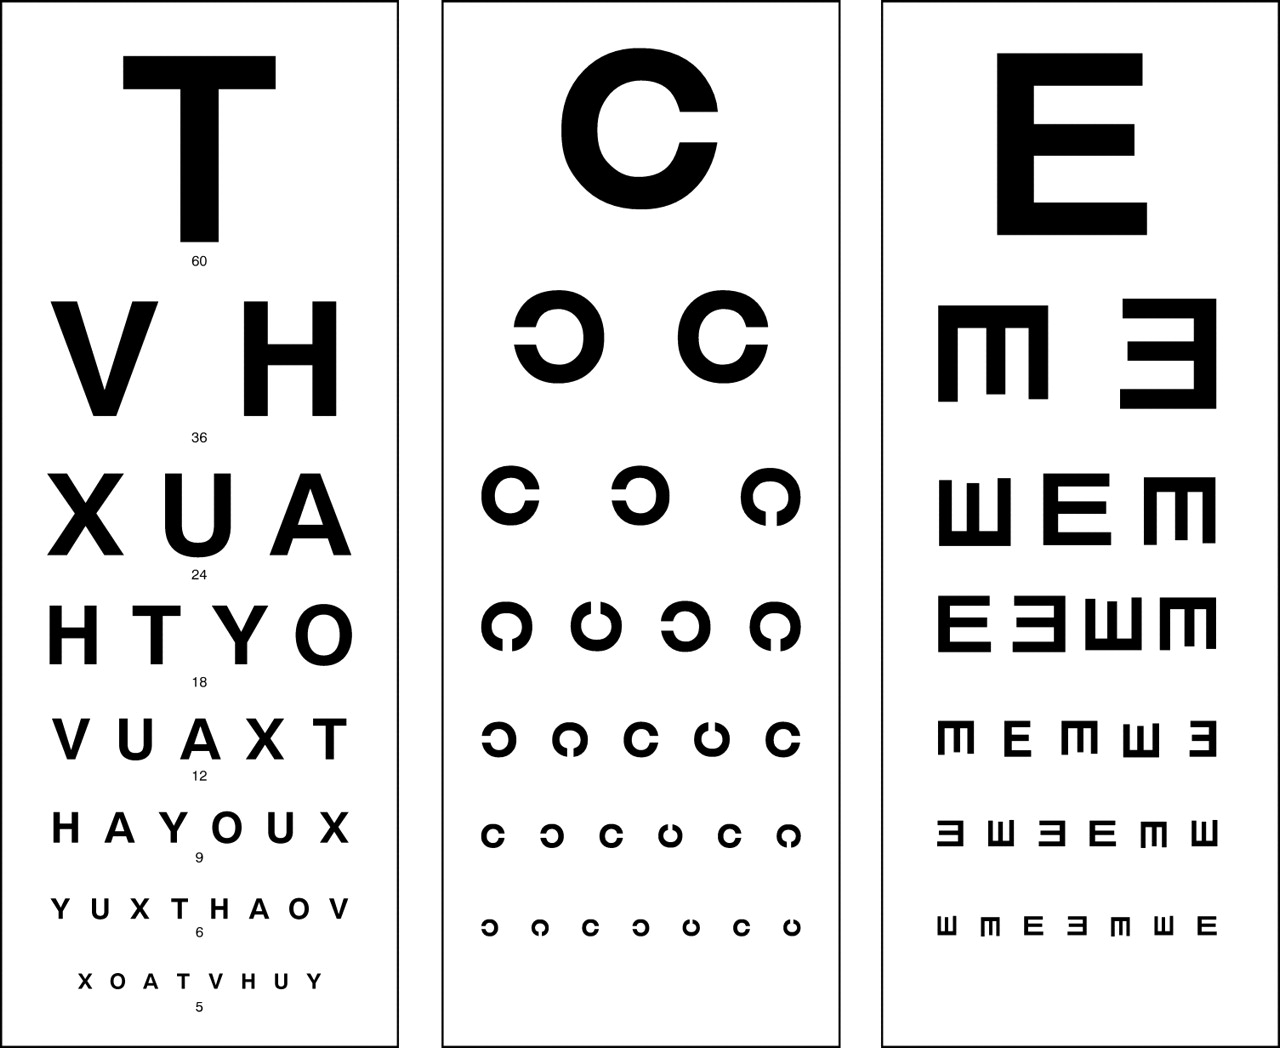 Standard Eye Chart